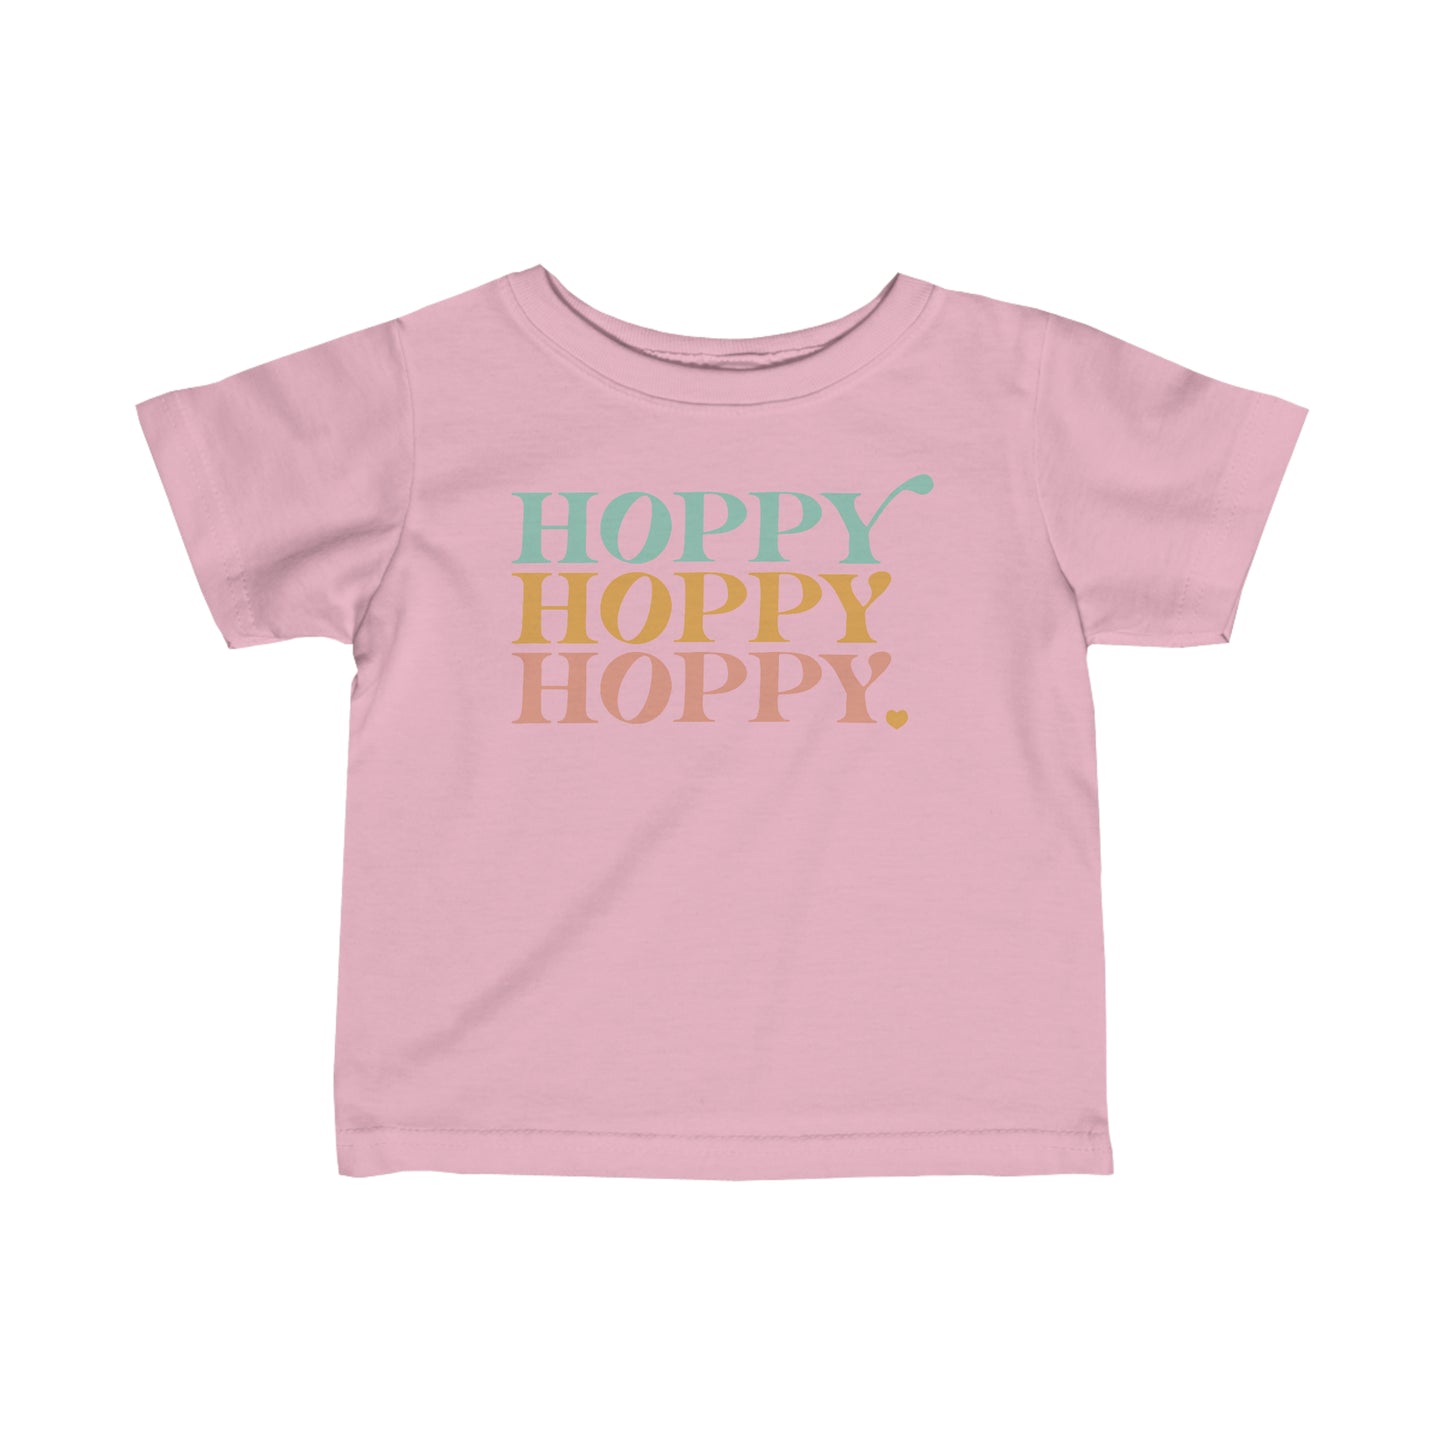 Hoppy Hoppy Hoppy // Infant Fine Jersey Tee